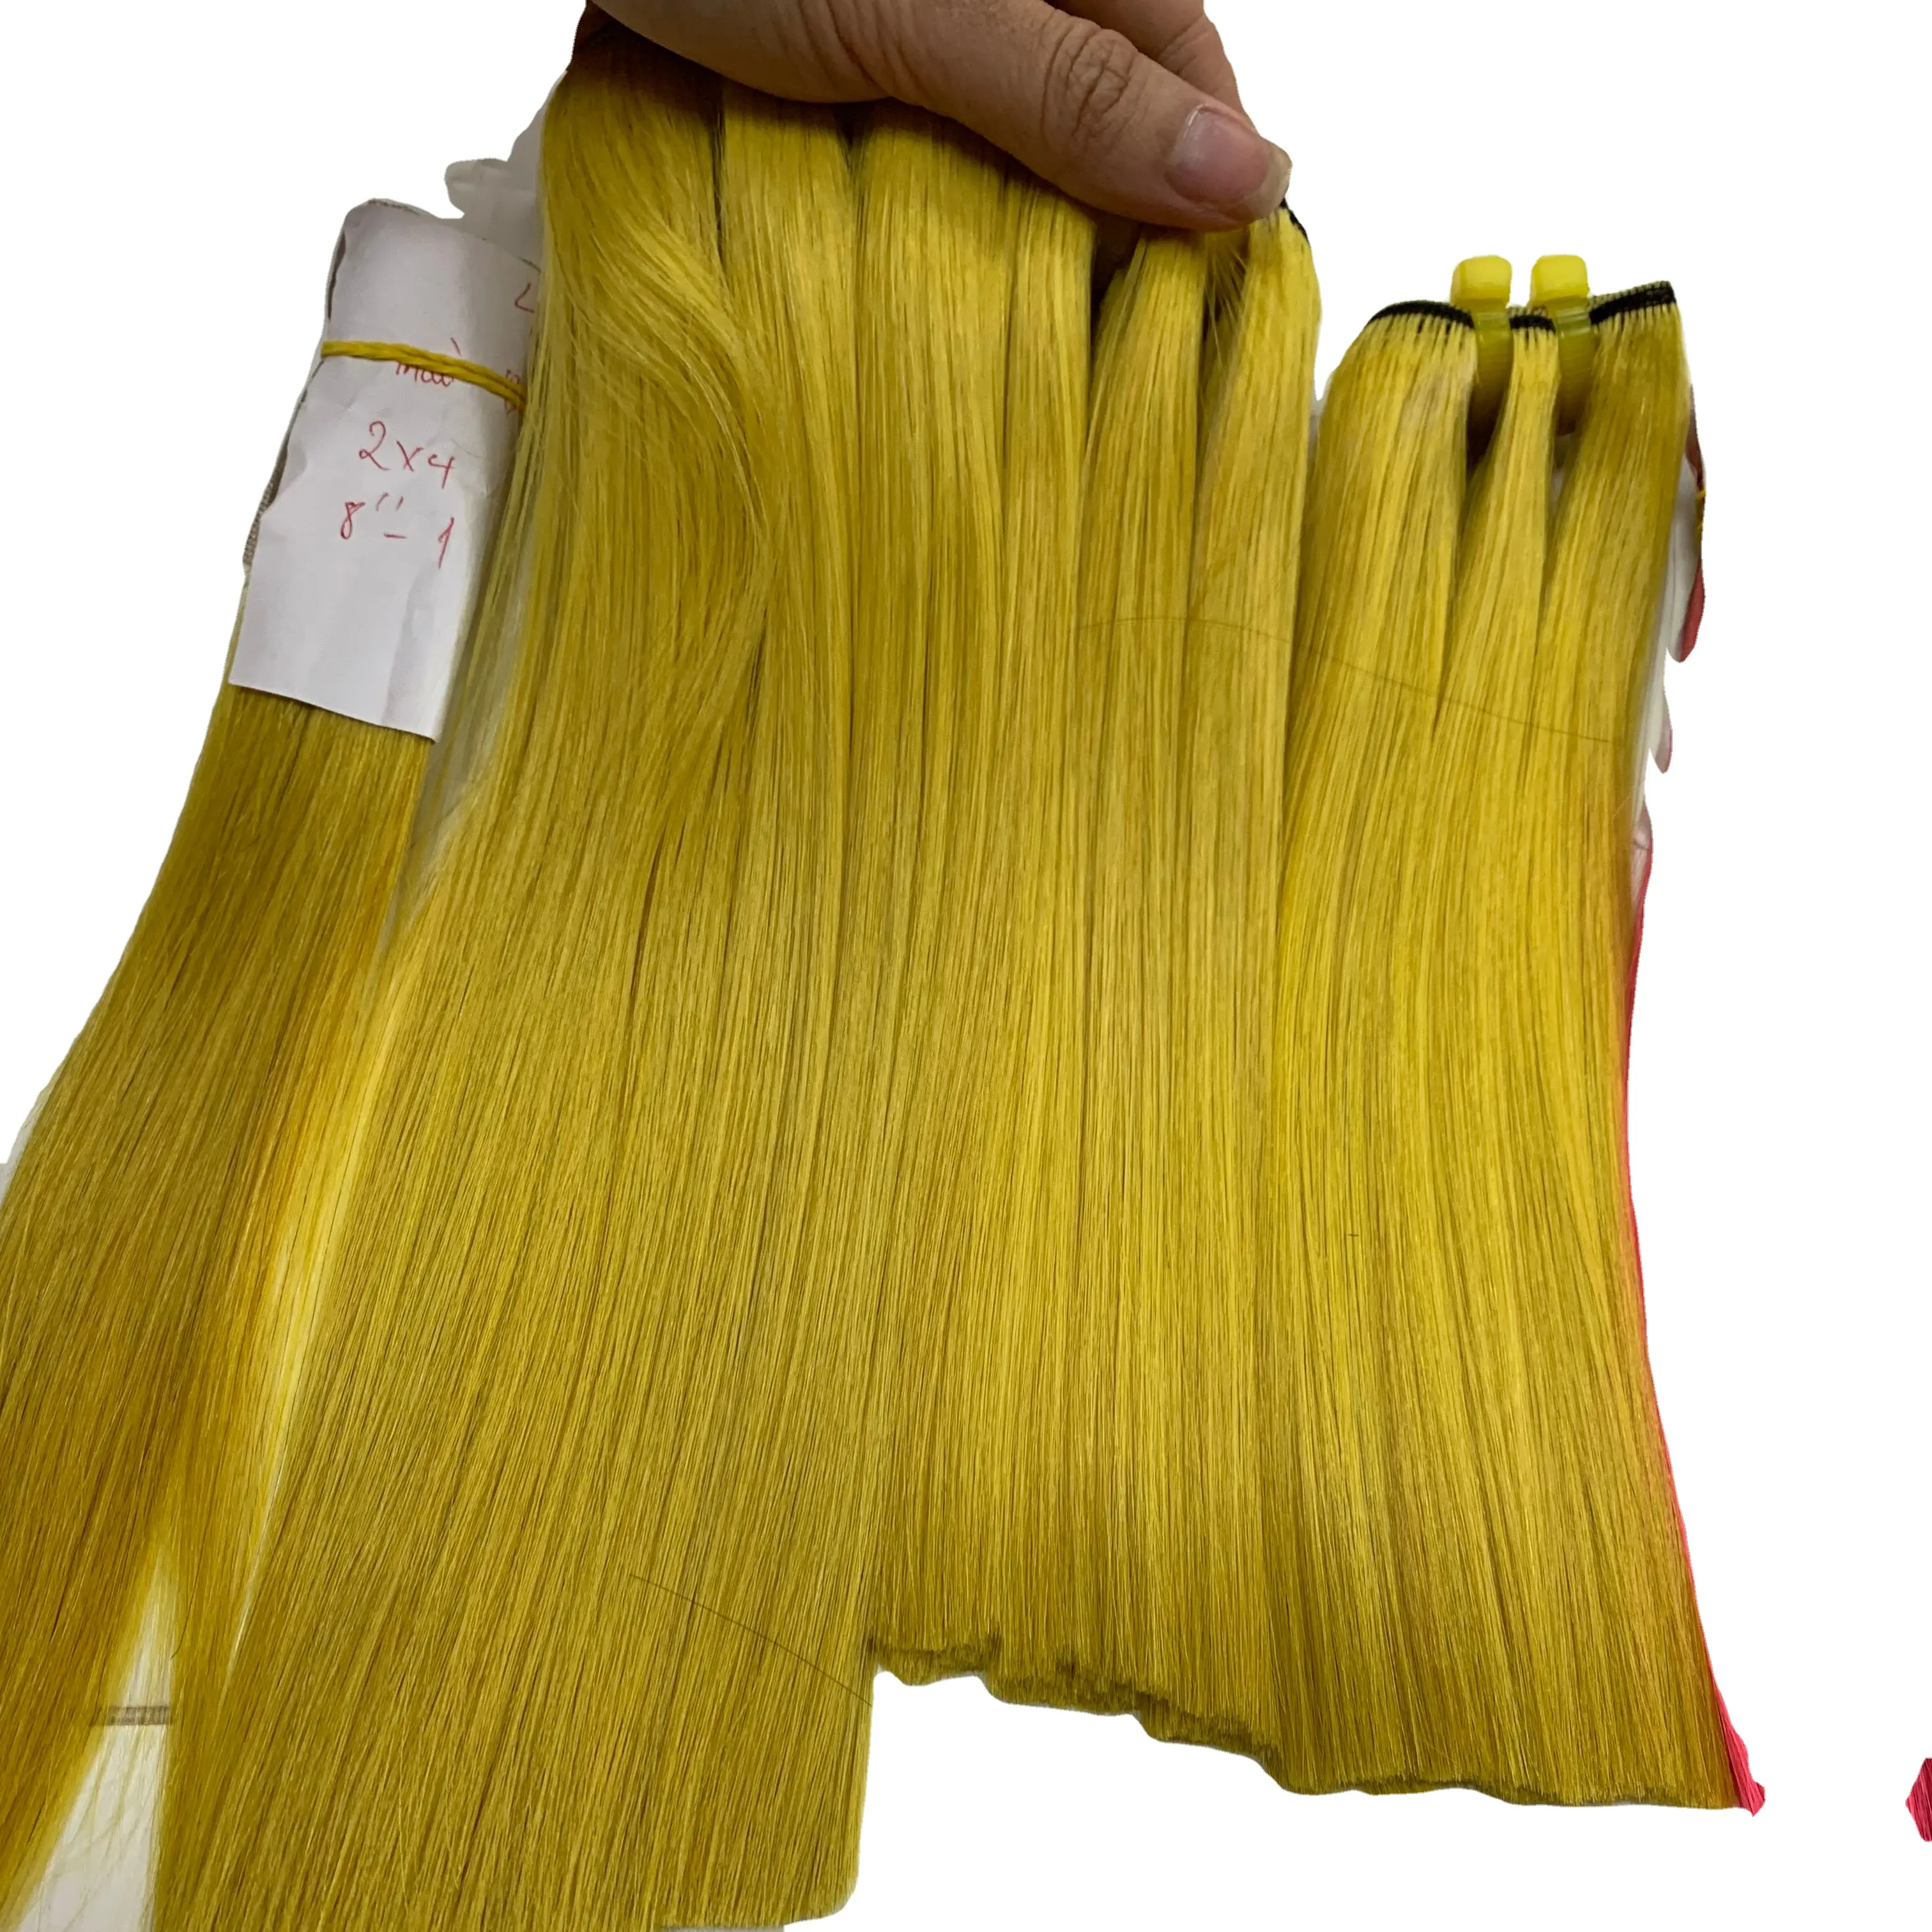 VIET NAM Welf capelli grezzi vergine capelli umani doppio disegnato migliore qualità di colore chiaro da Livihair company in Vietnam